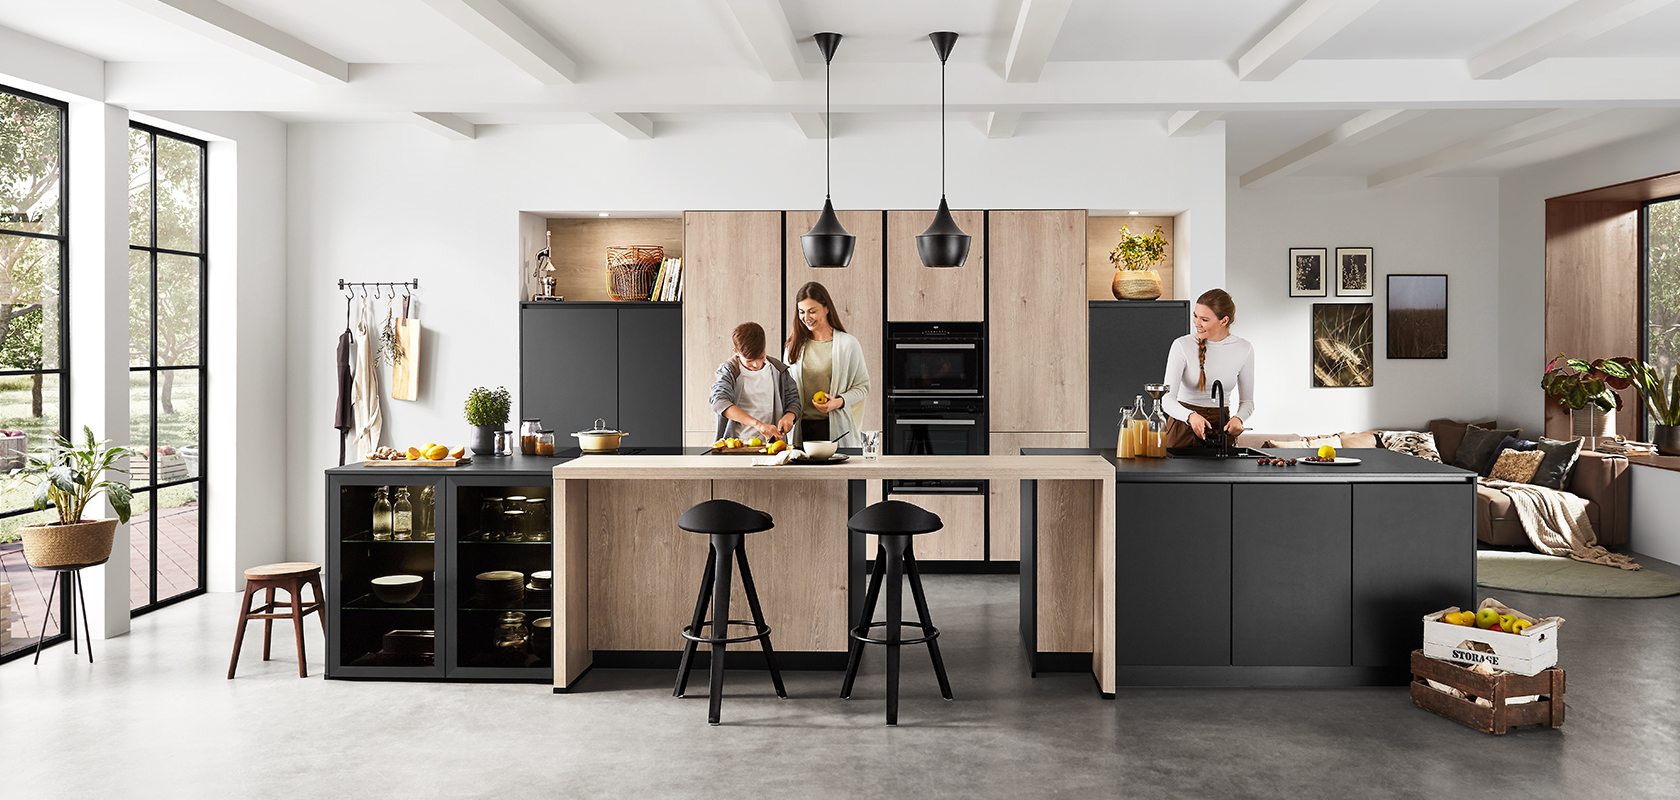 Moderne keukeninterieur met een ruim, schoon ontwerp met twee mensen die koken en kletsen, waarbij functionaliteit en eigentijdse stijl worden benadrukt.